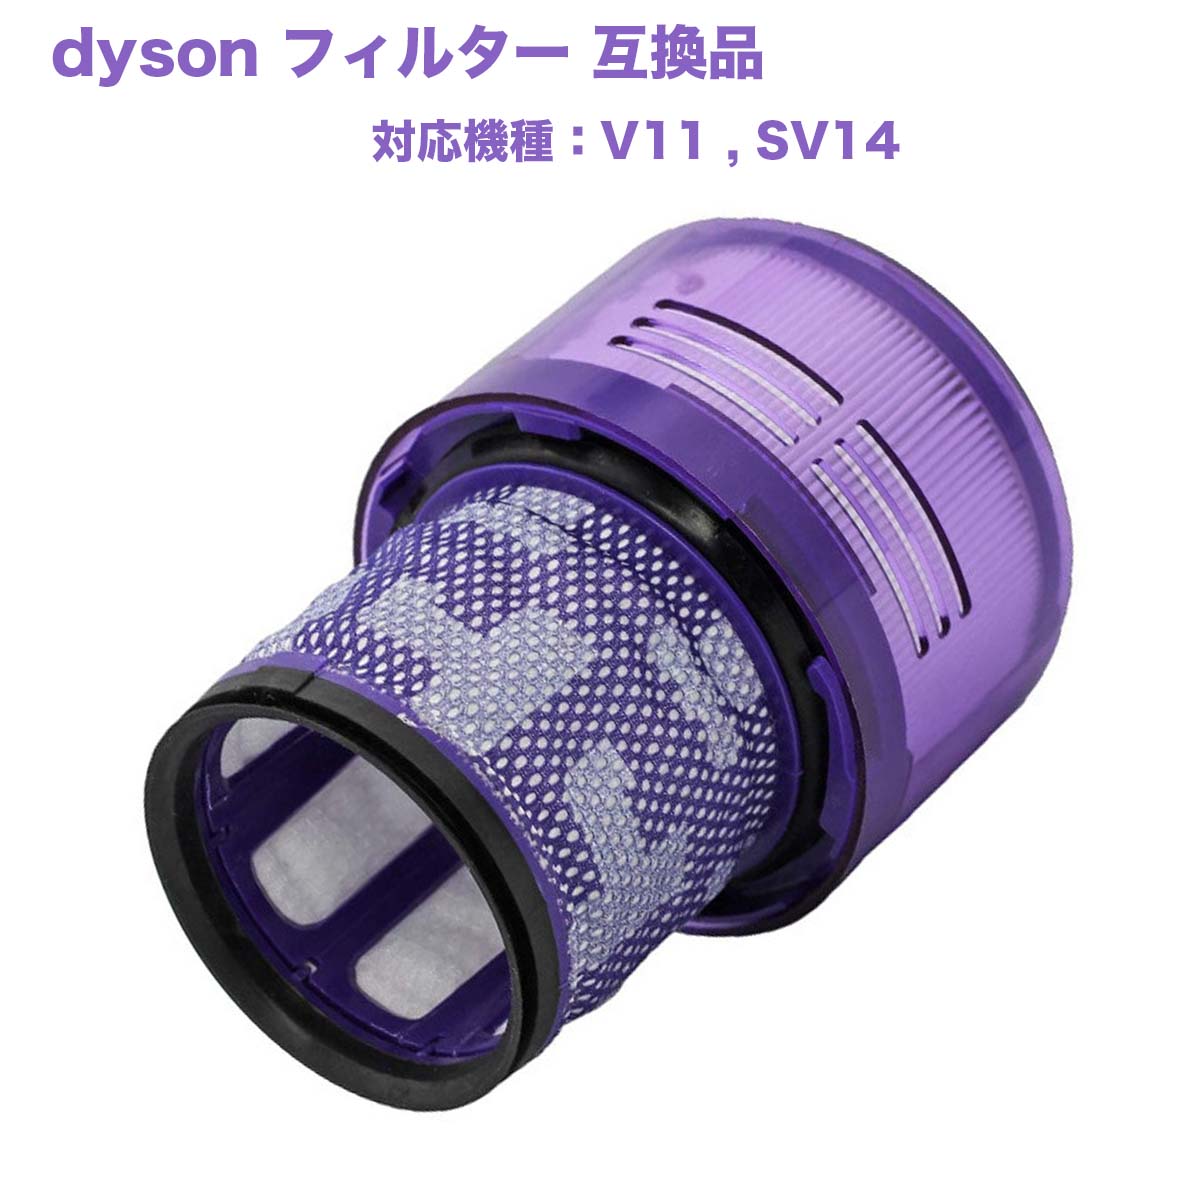 ダイソン V11 SV14 フィルターユニット 互換フィルター 互換品 dyson 掃除機 エアクリーナー 水洗い可能 Fluffy RSL あす楽